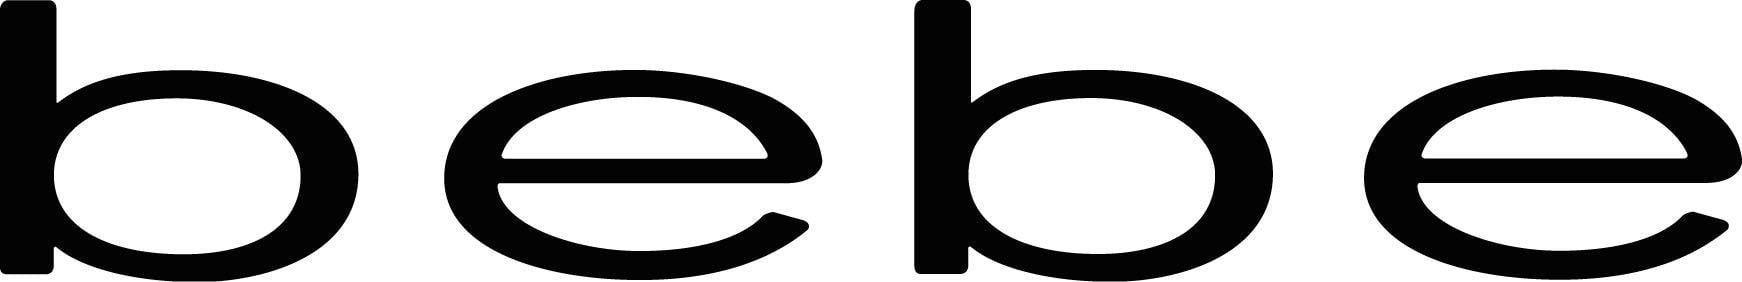 Bebe Clothing Logo